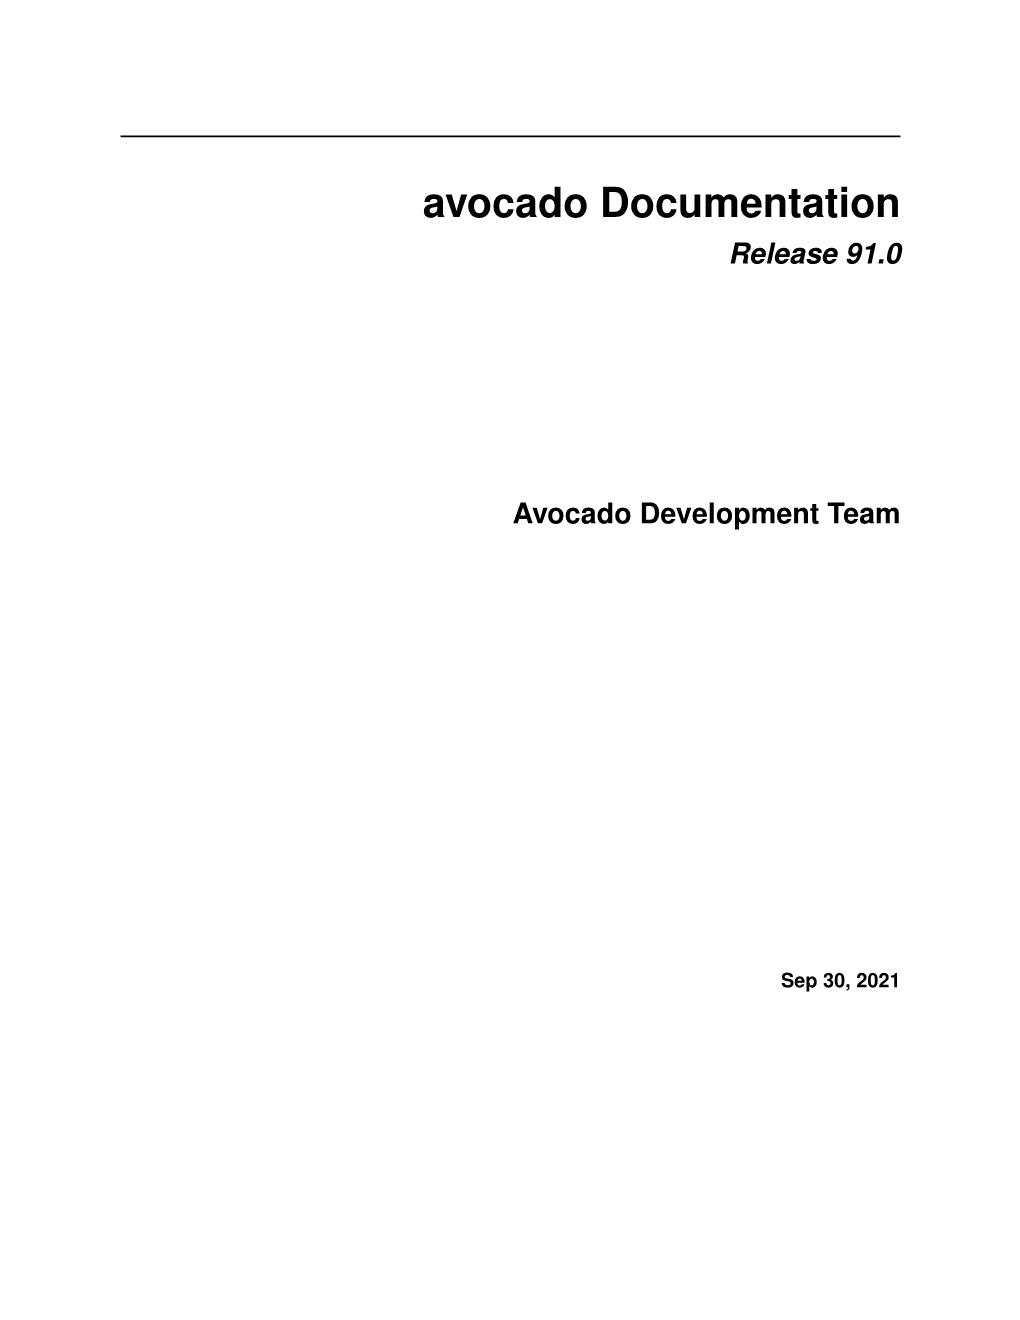 Avocado Documentation Release 91.0